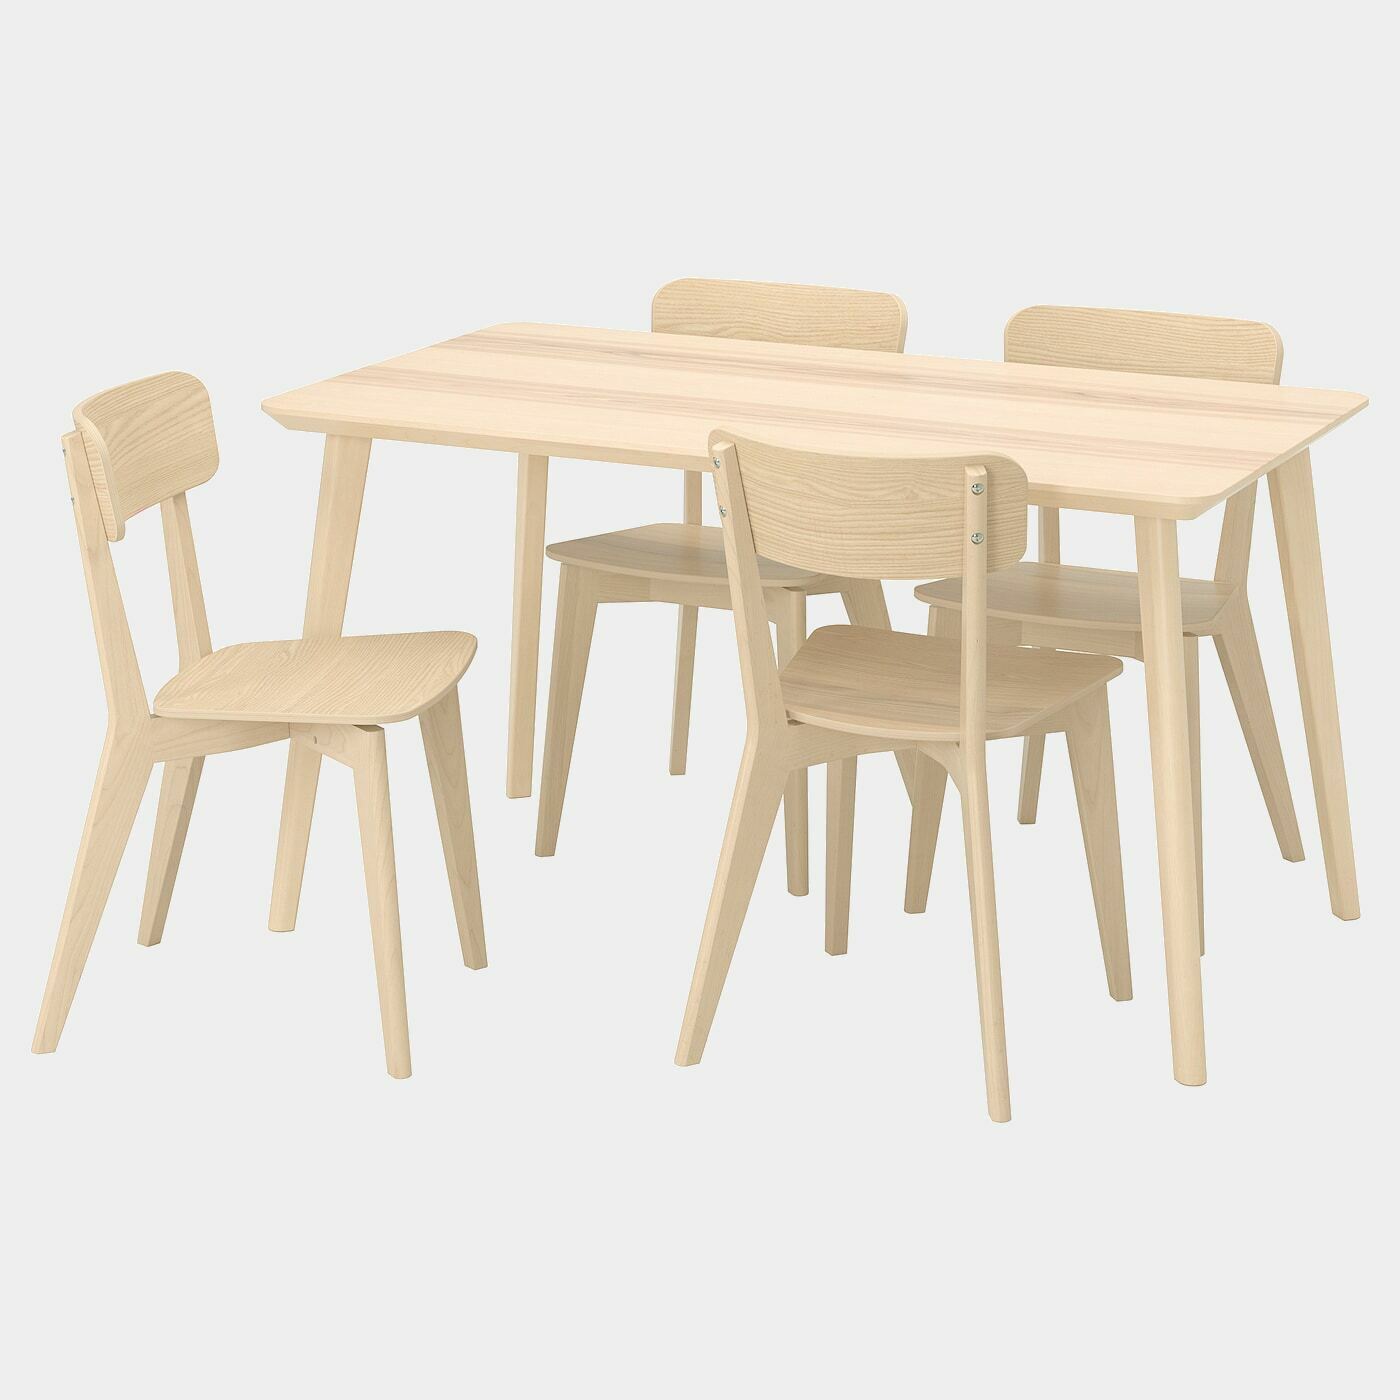 LISABO / LISABO Tisch und 4 Stühle  -  - Möbel Ideen für dein Zuhause von Home Trends. Möbel Trends von Social Media Influencer für dein Skandi Zuhause.